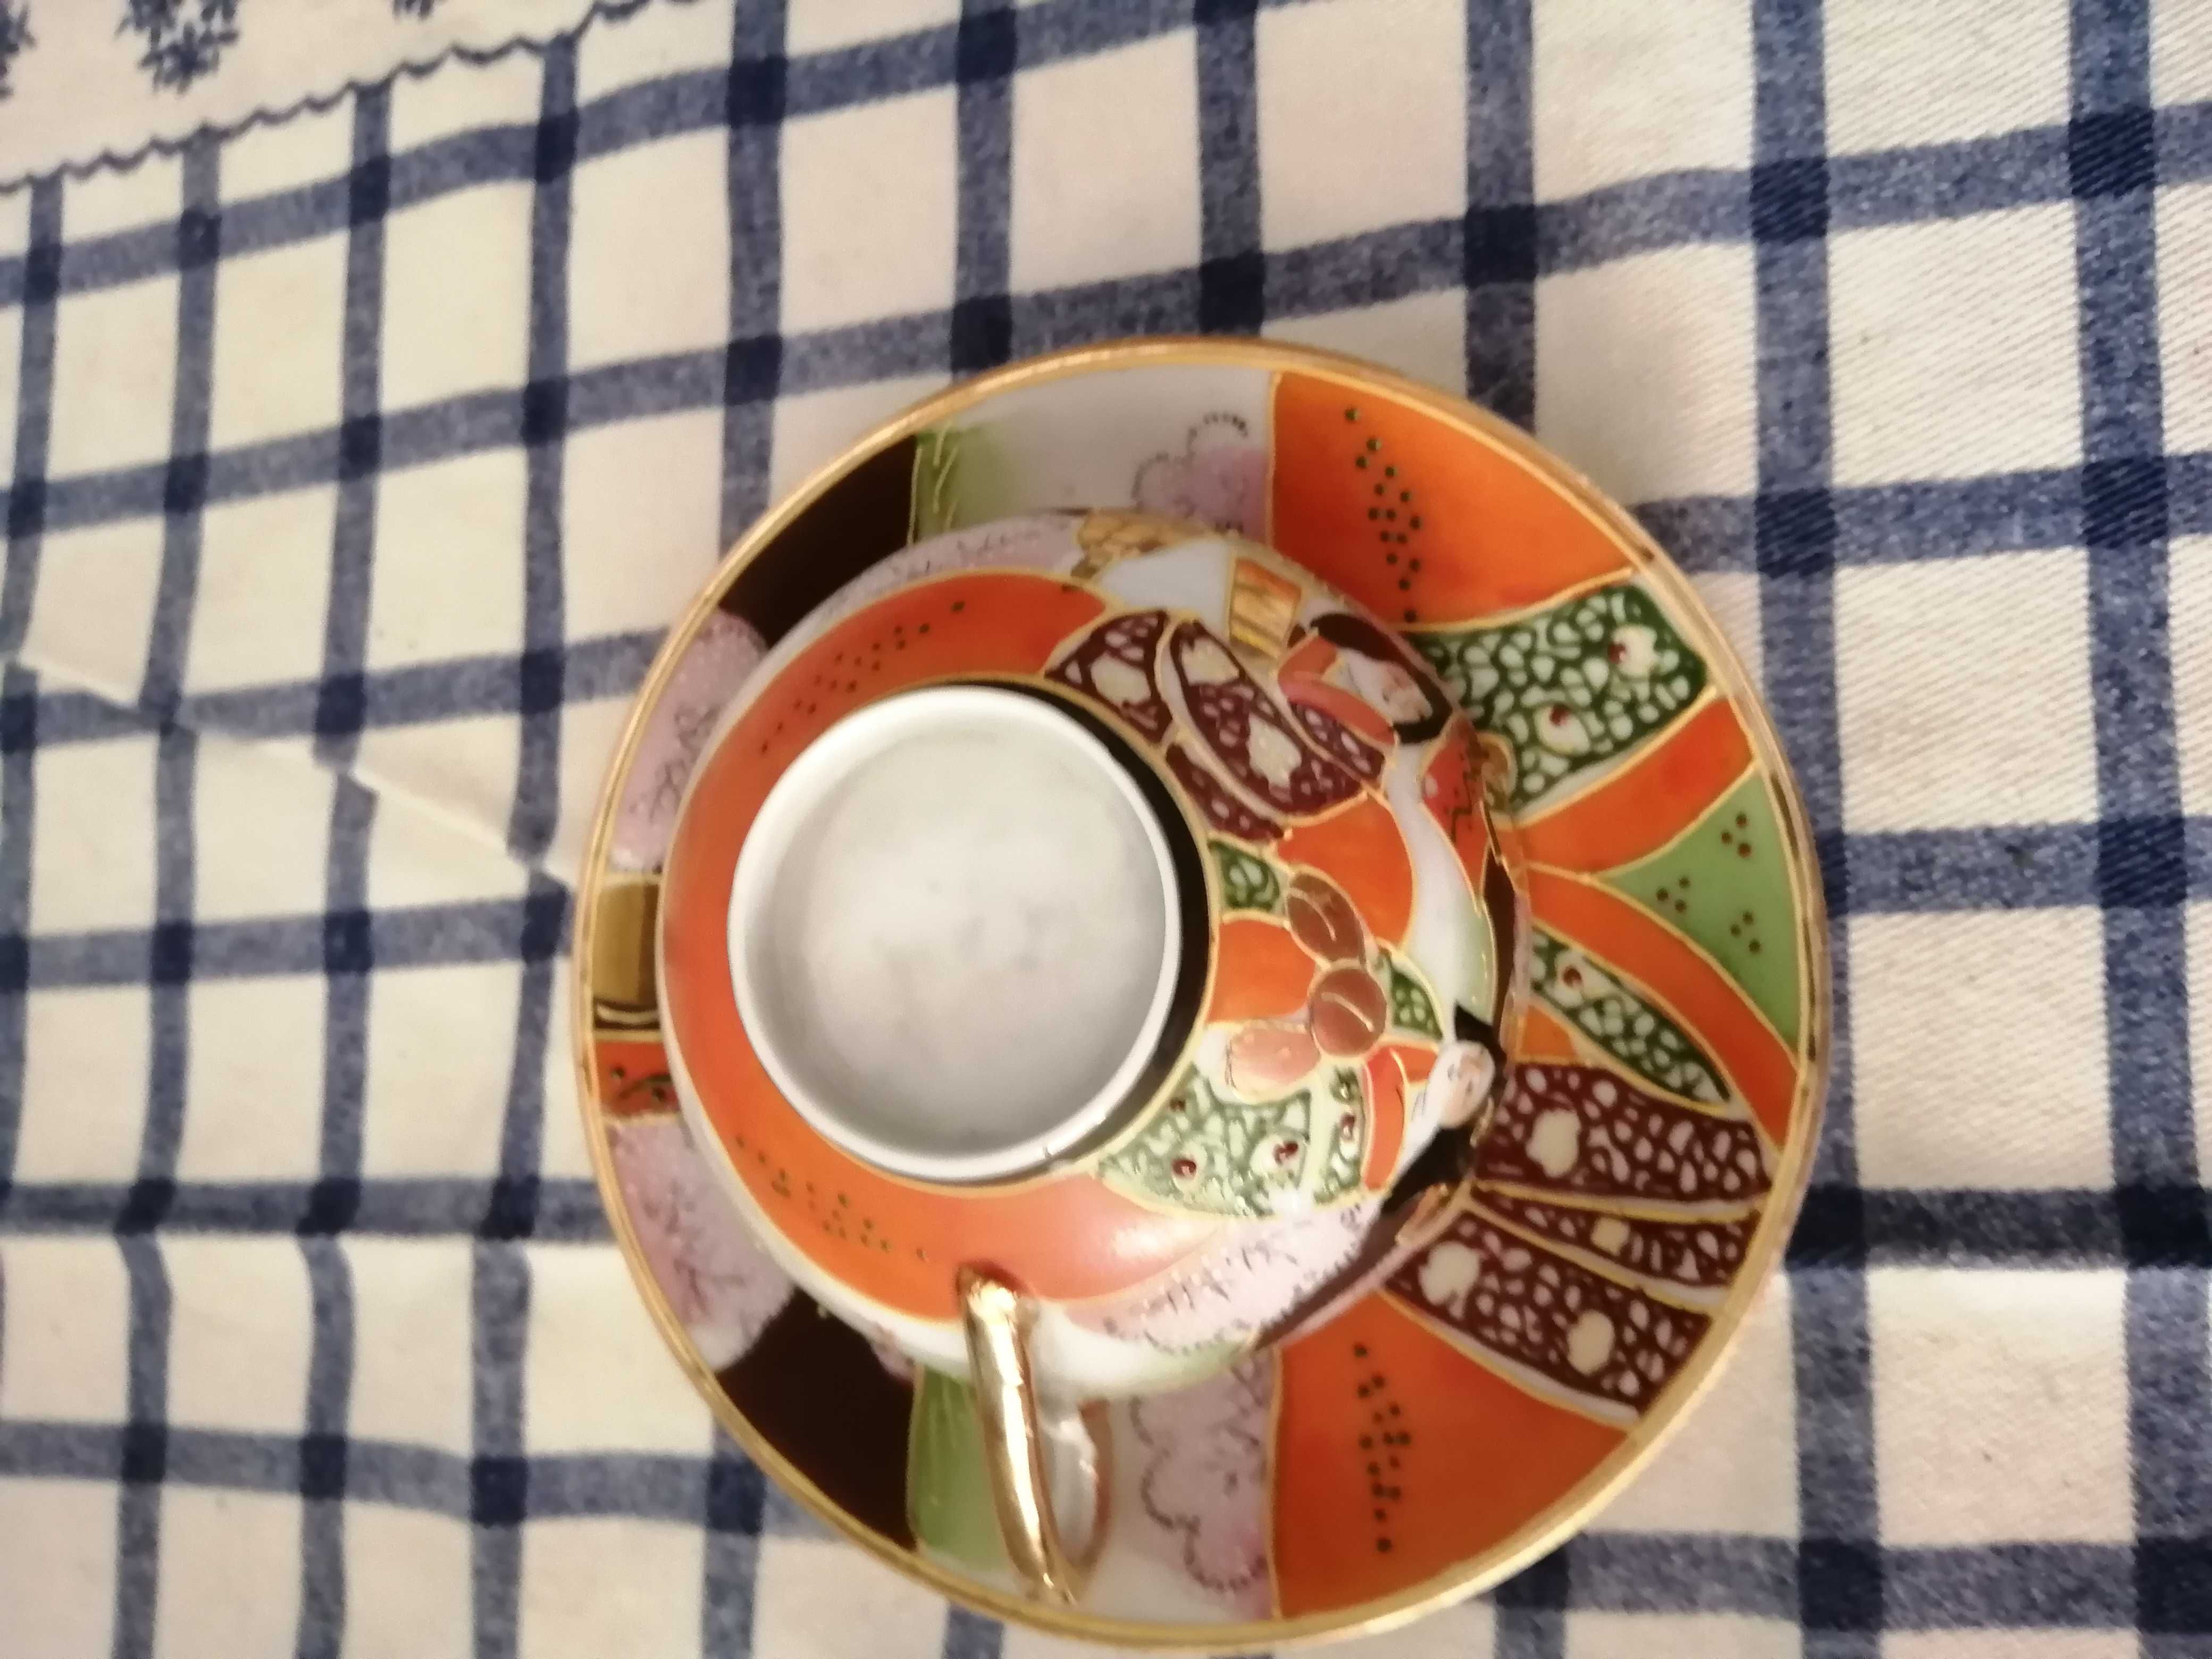 Chávena de chá chinesa antiga